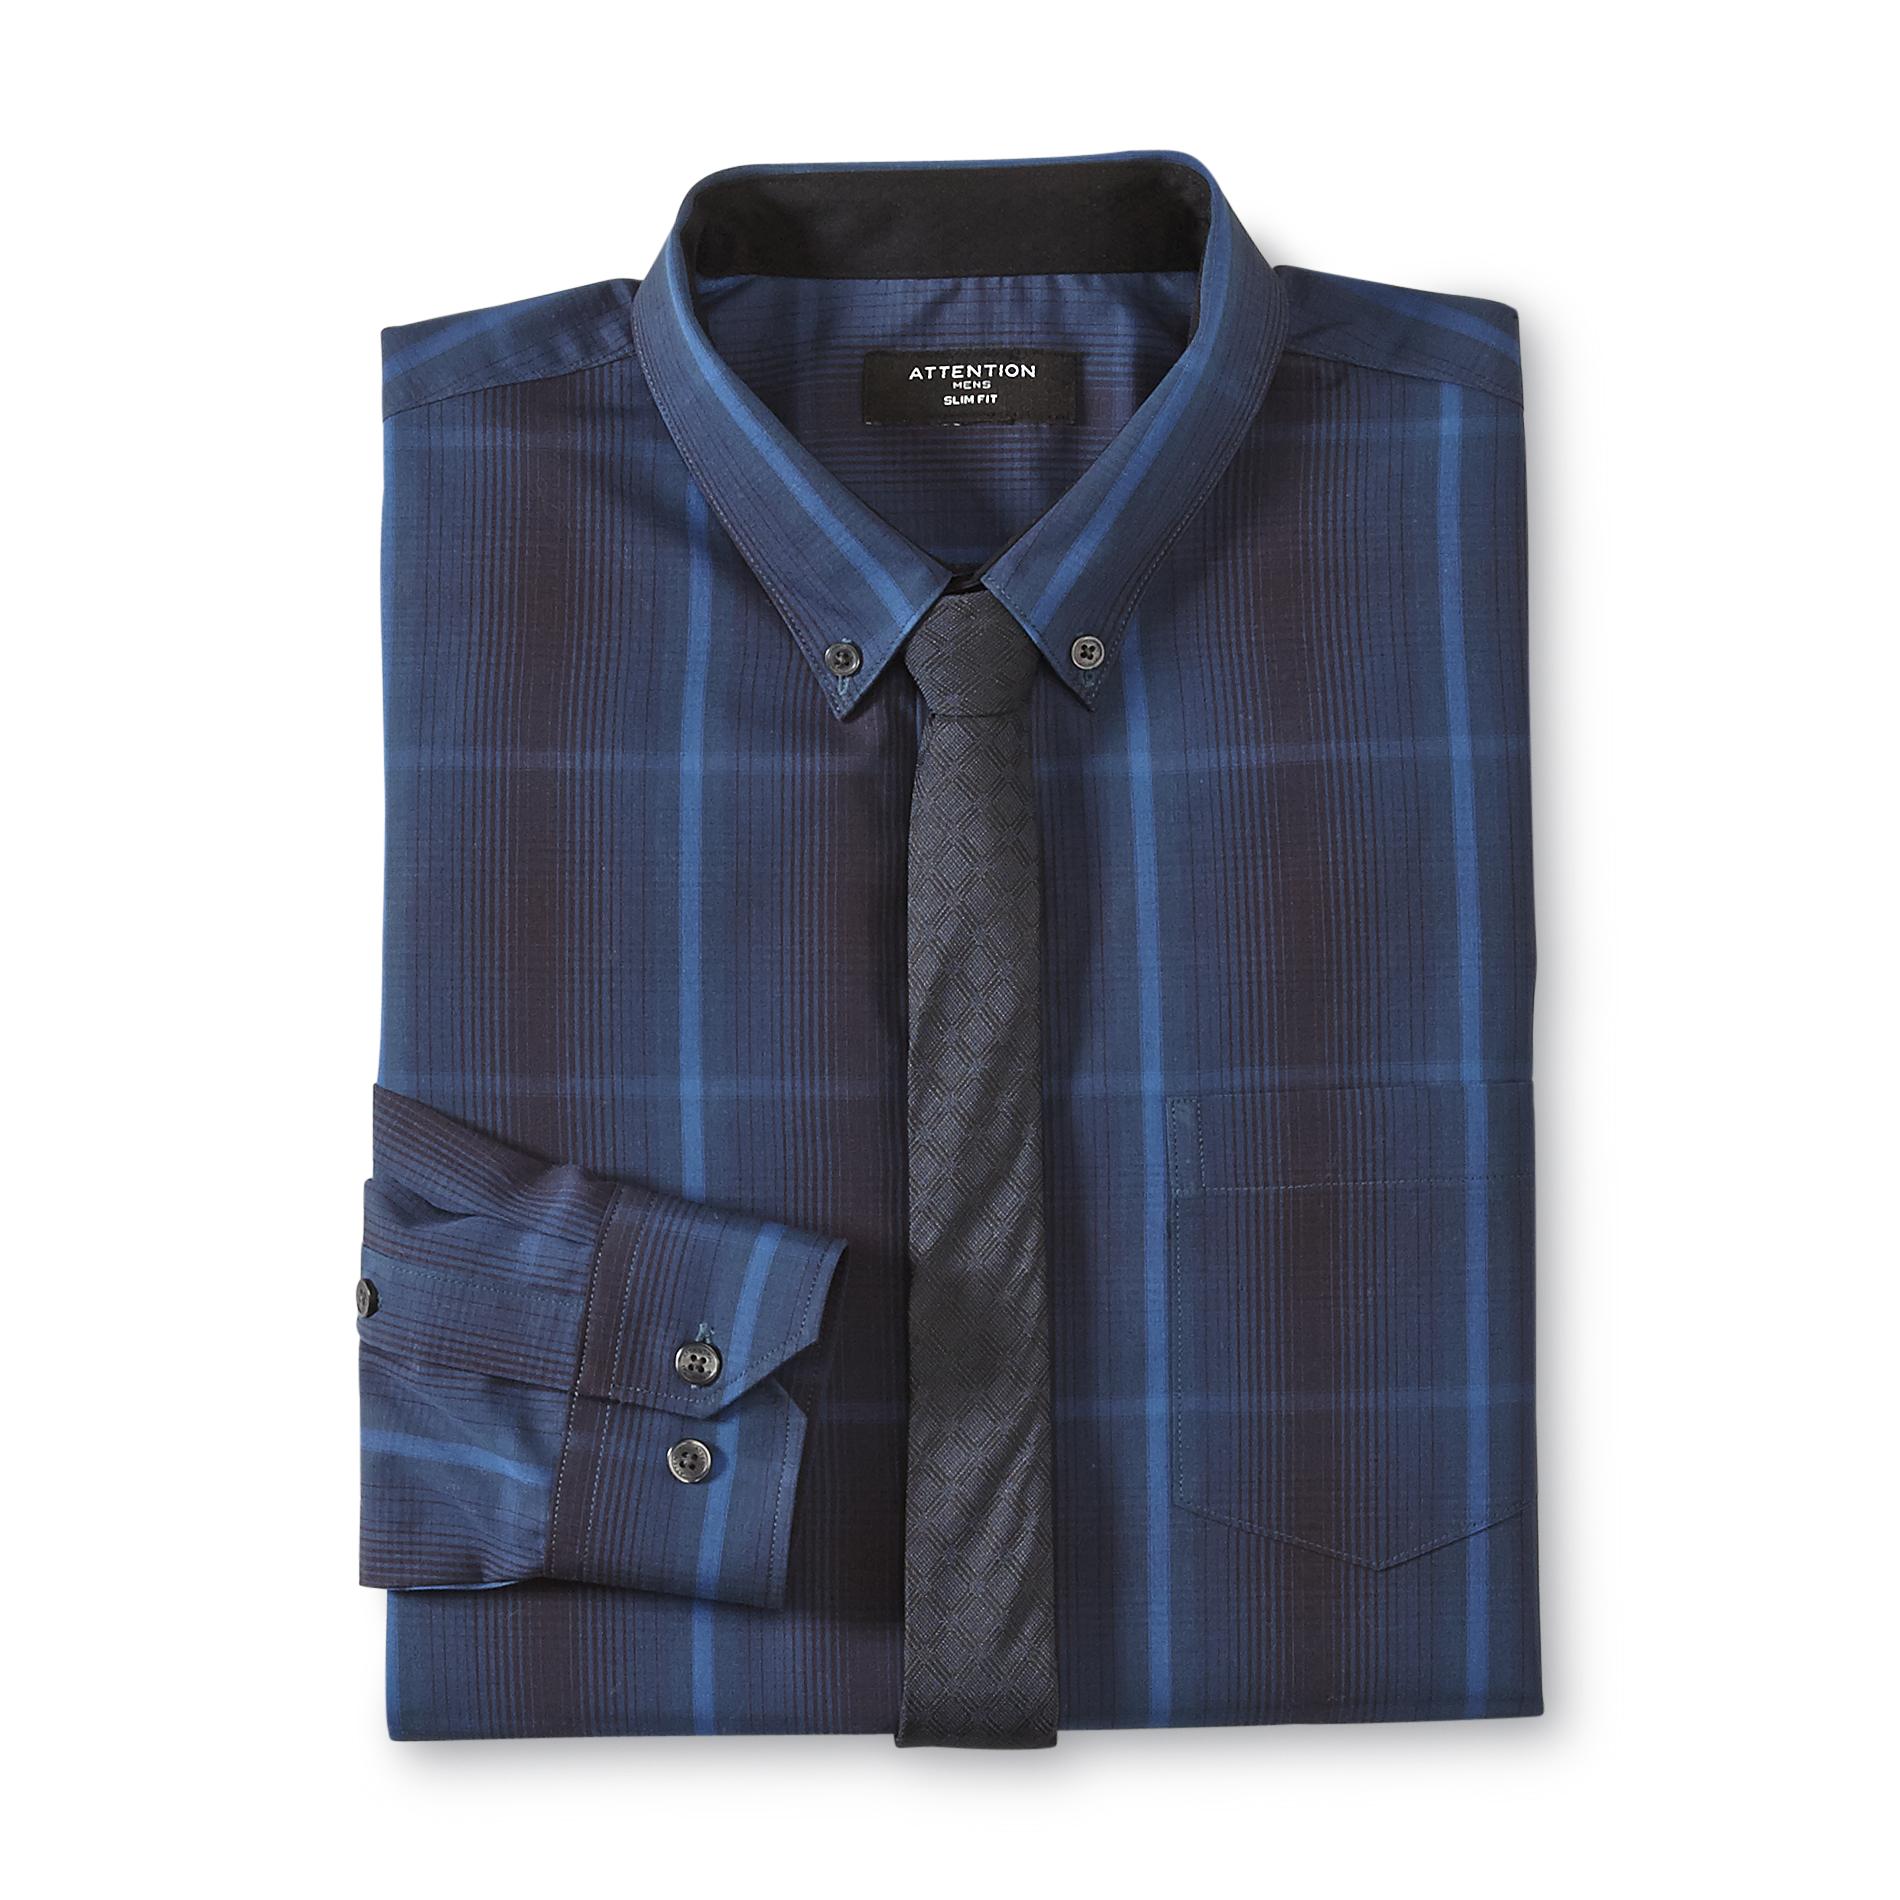 Attention Men's Slim Fit Dress Shirt & Necktie - Plaid